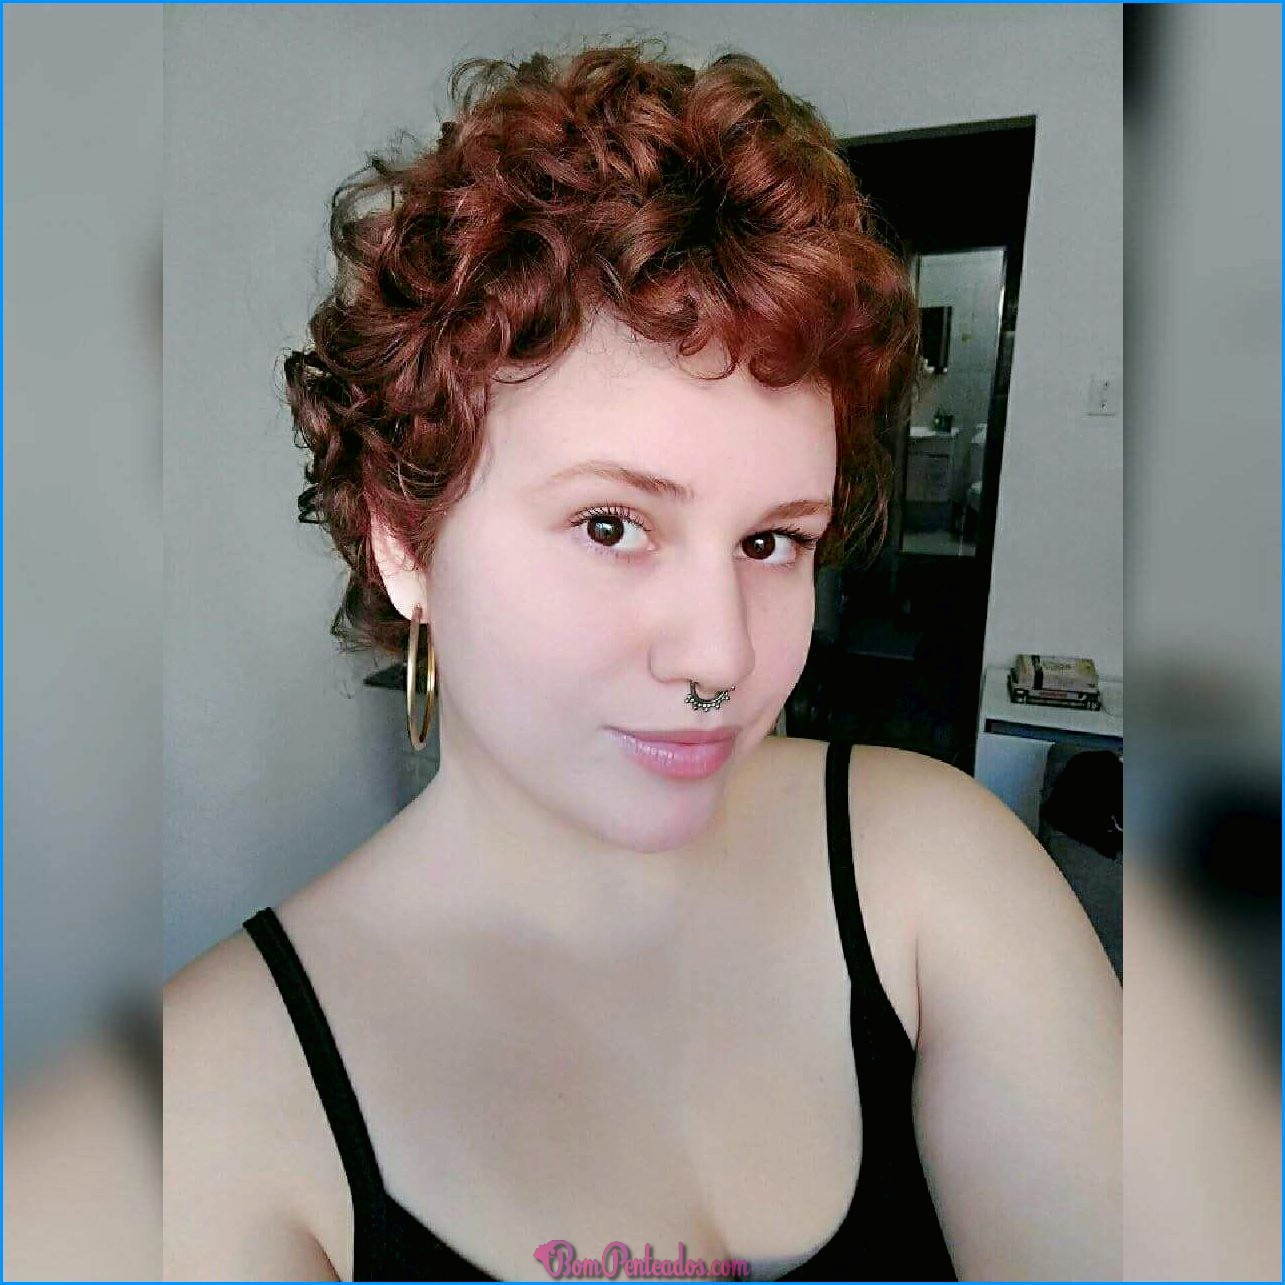 Curly Pixie Hair Crescendo - Crescendo um Pixie